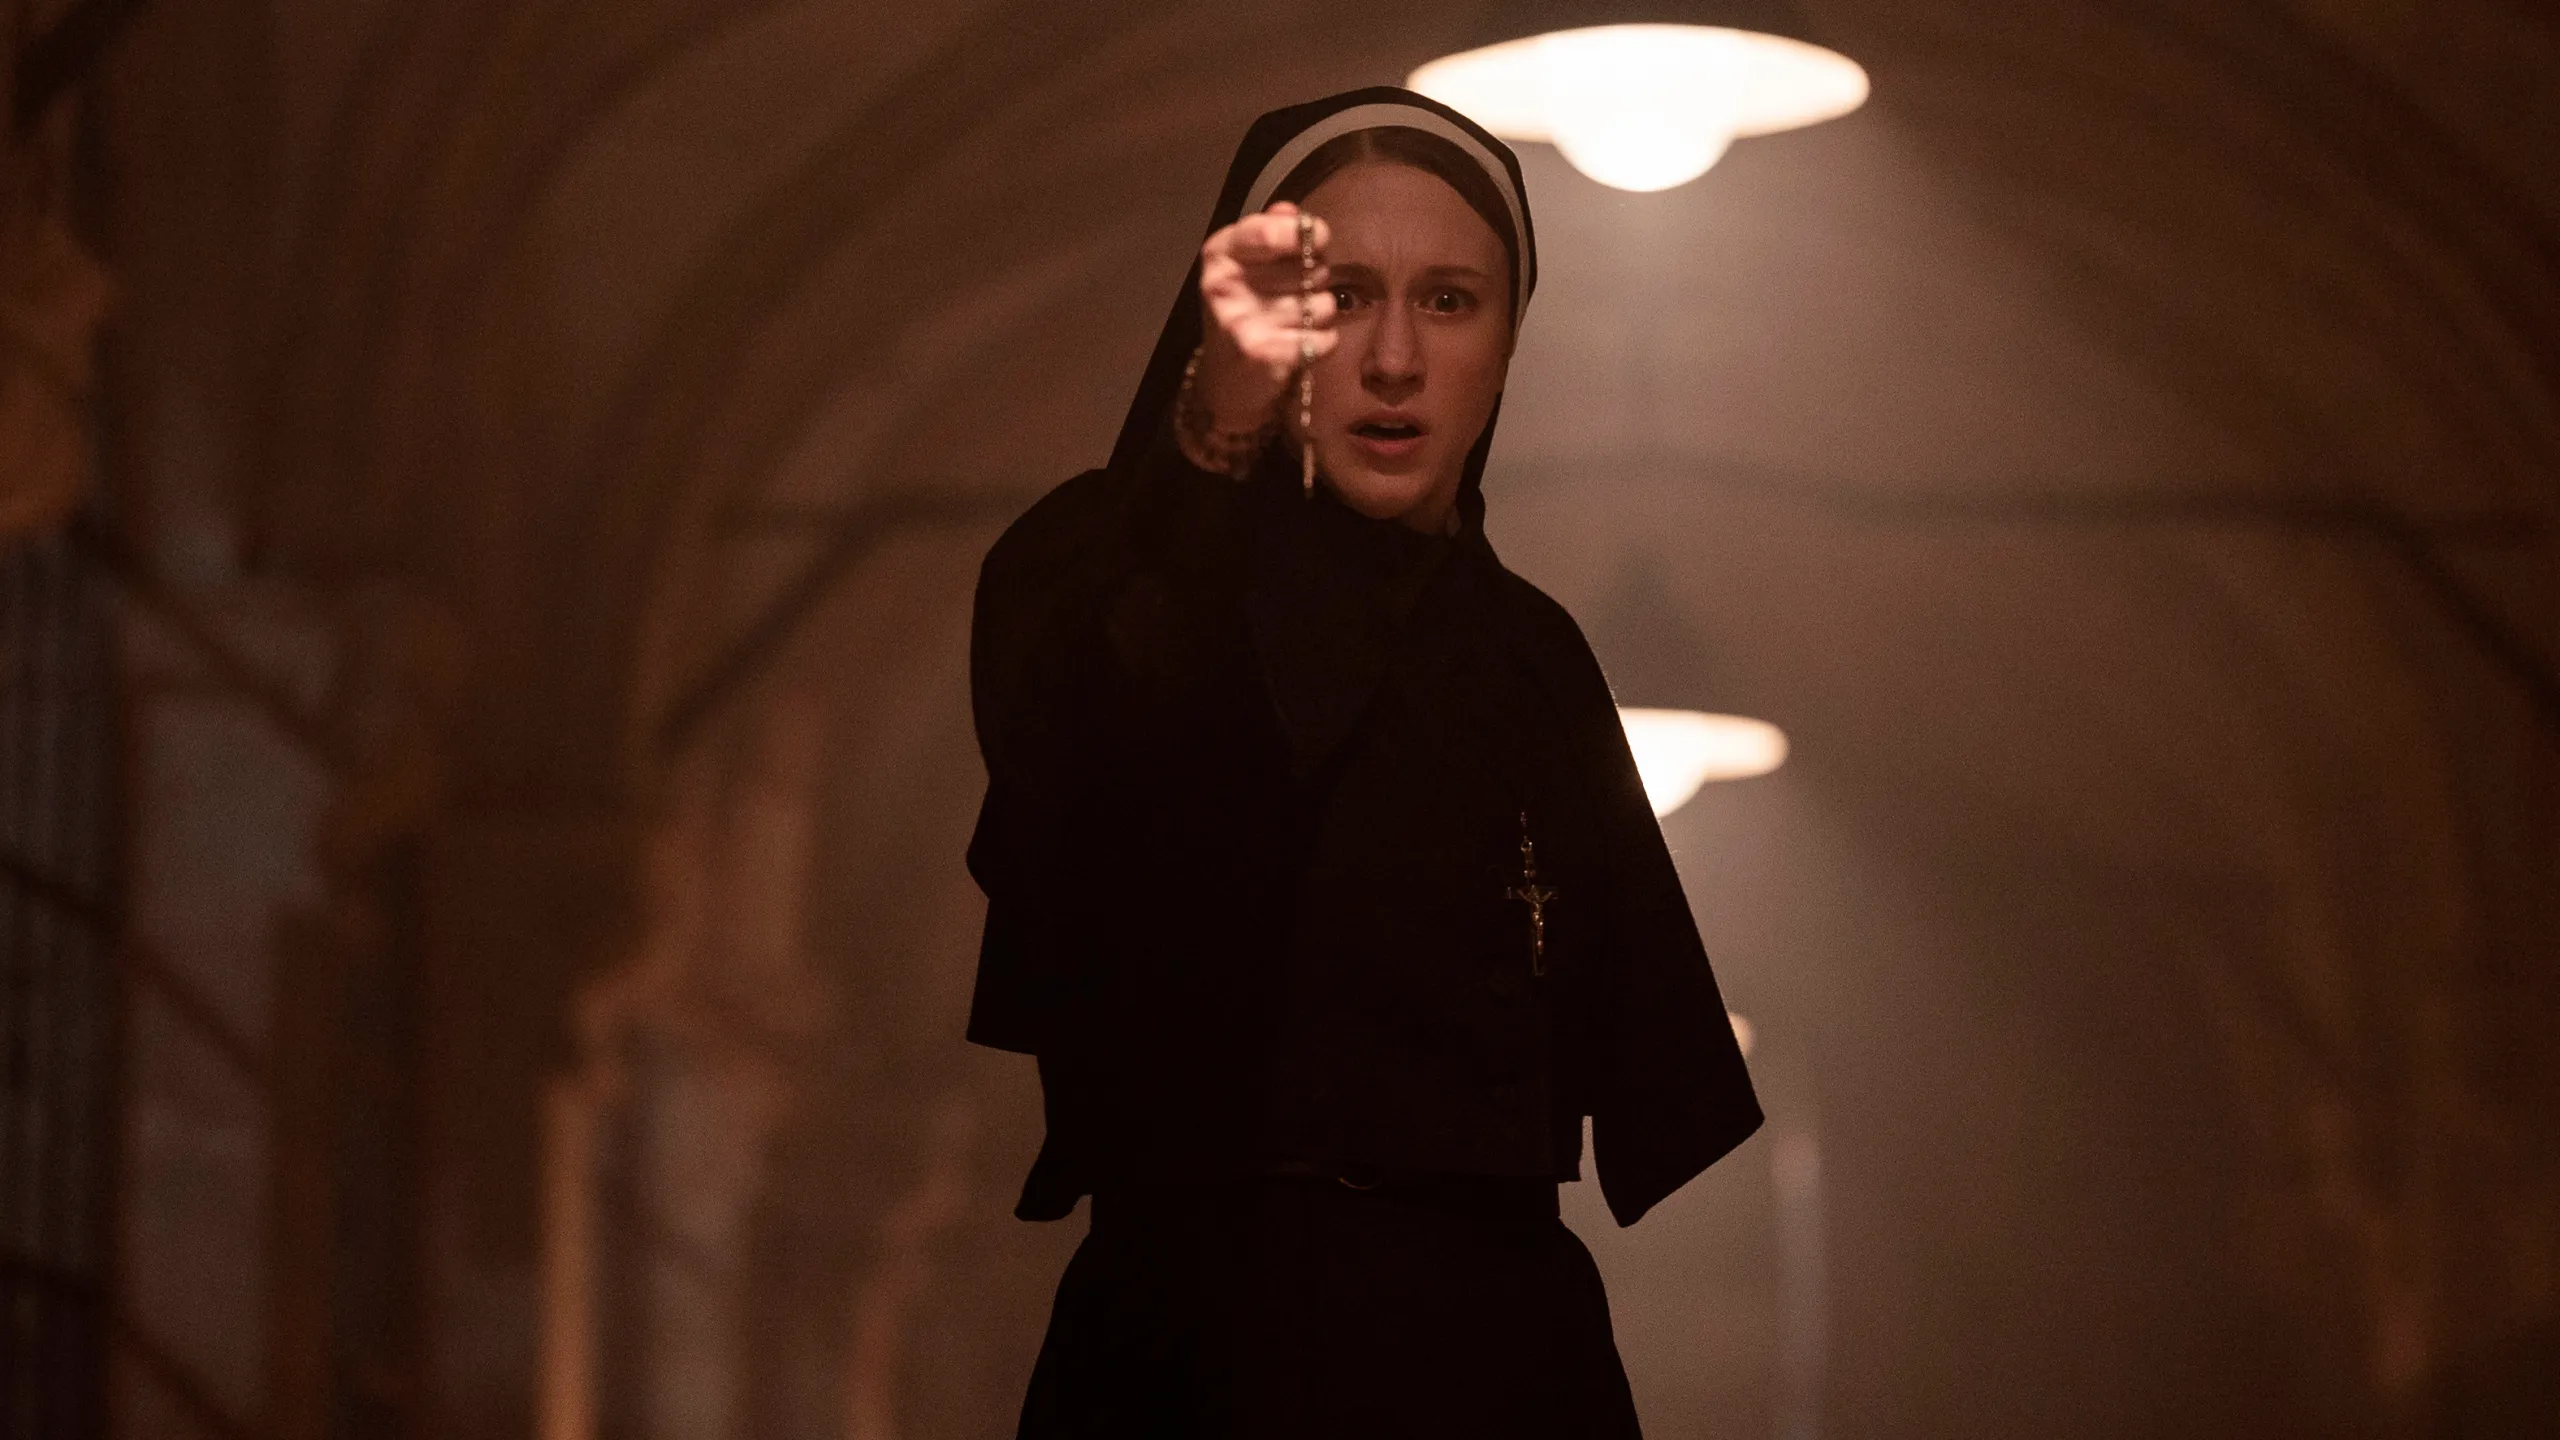 The Nun II Surpasses $200 Million Worldwide